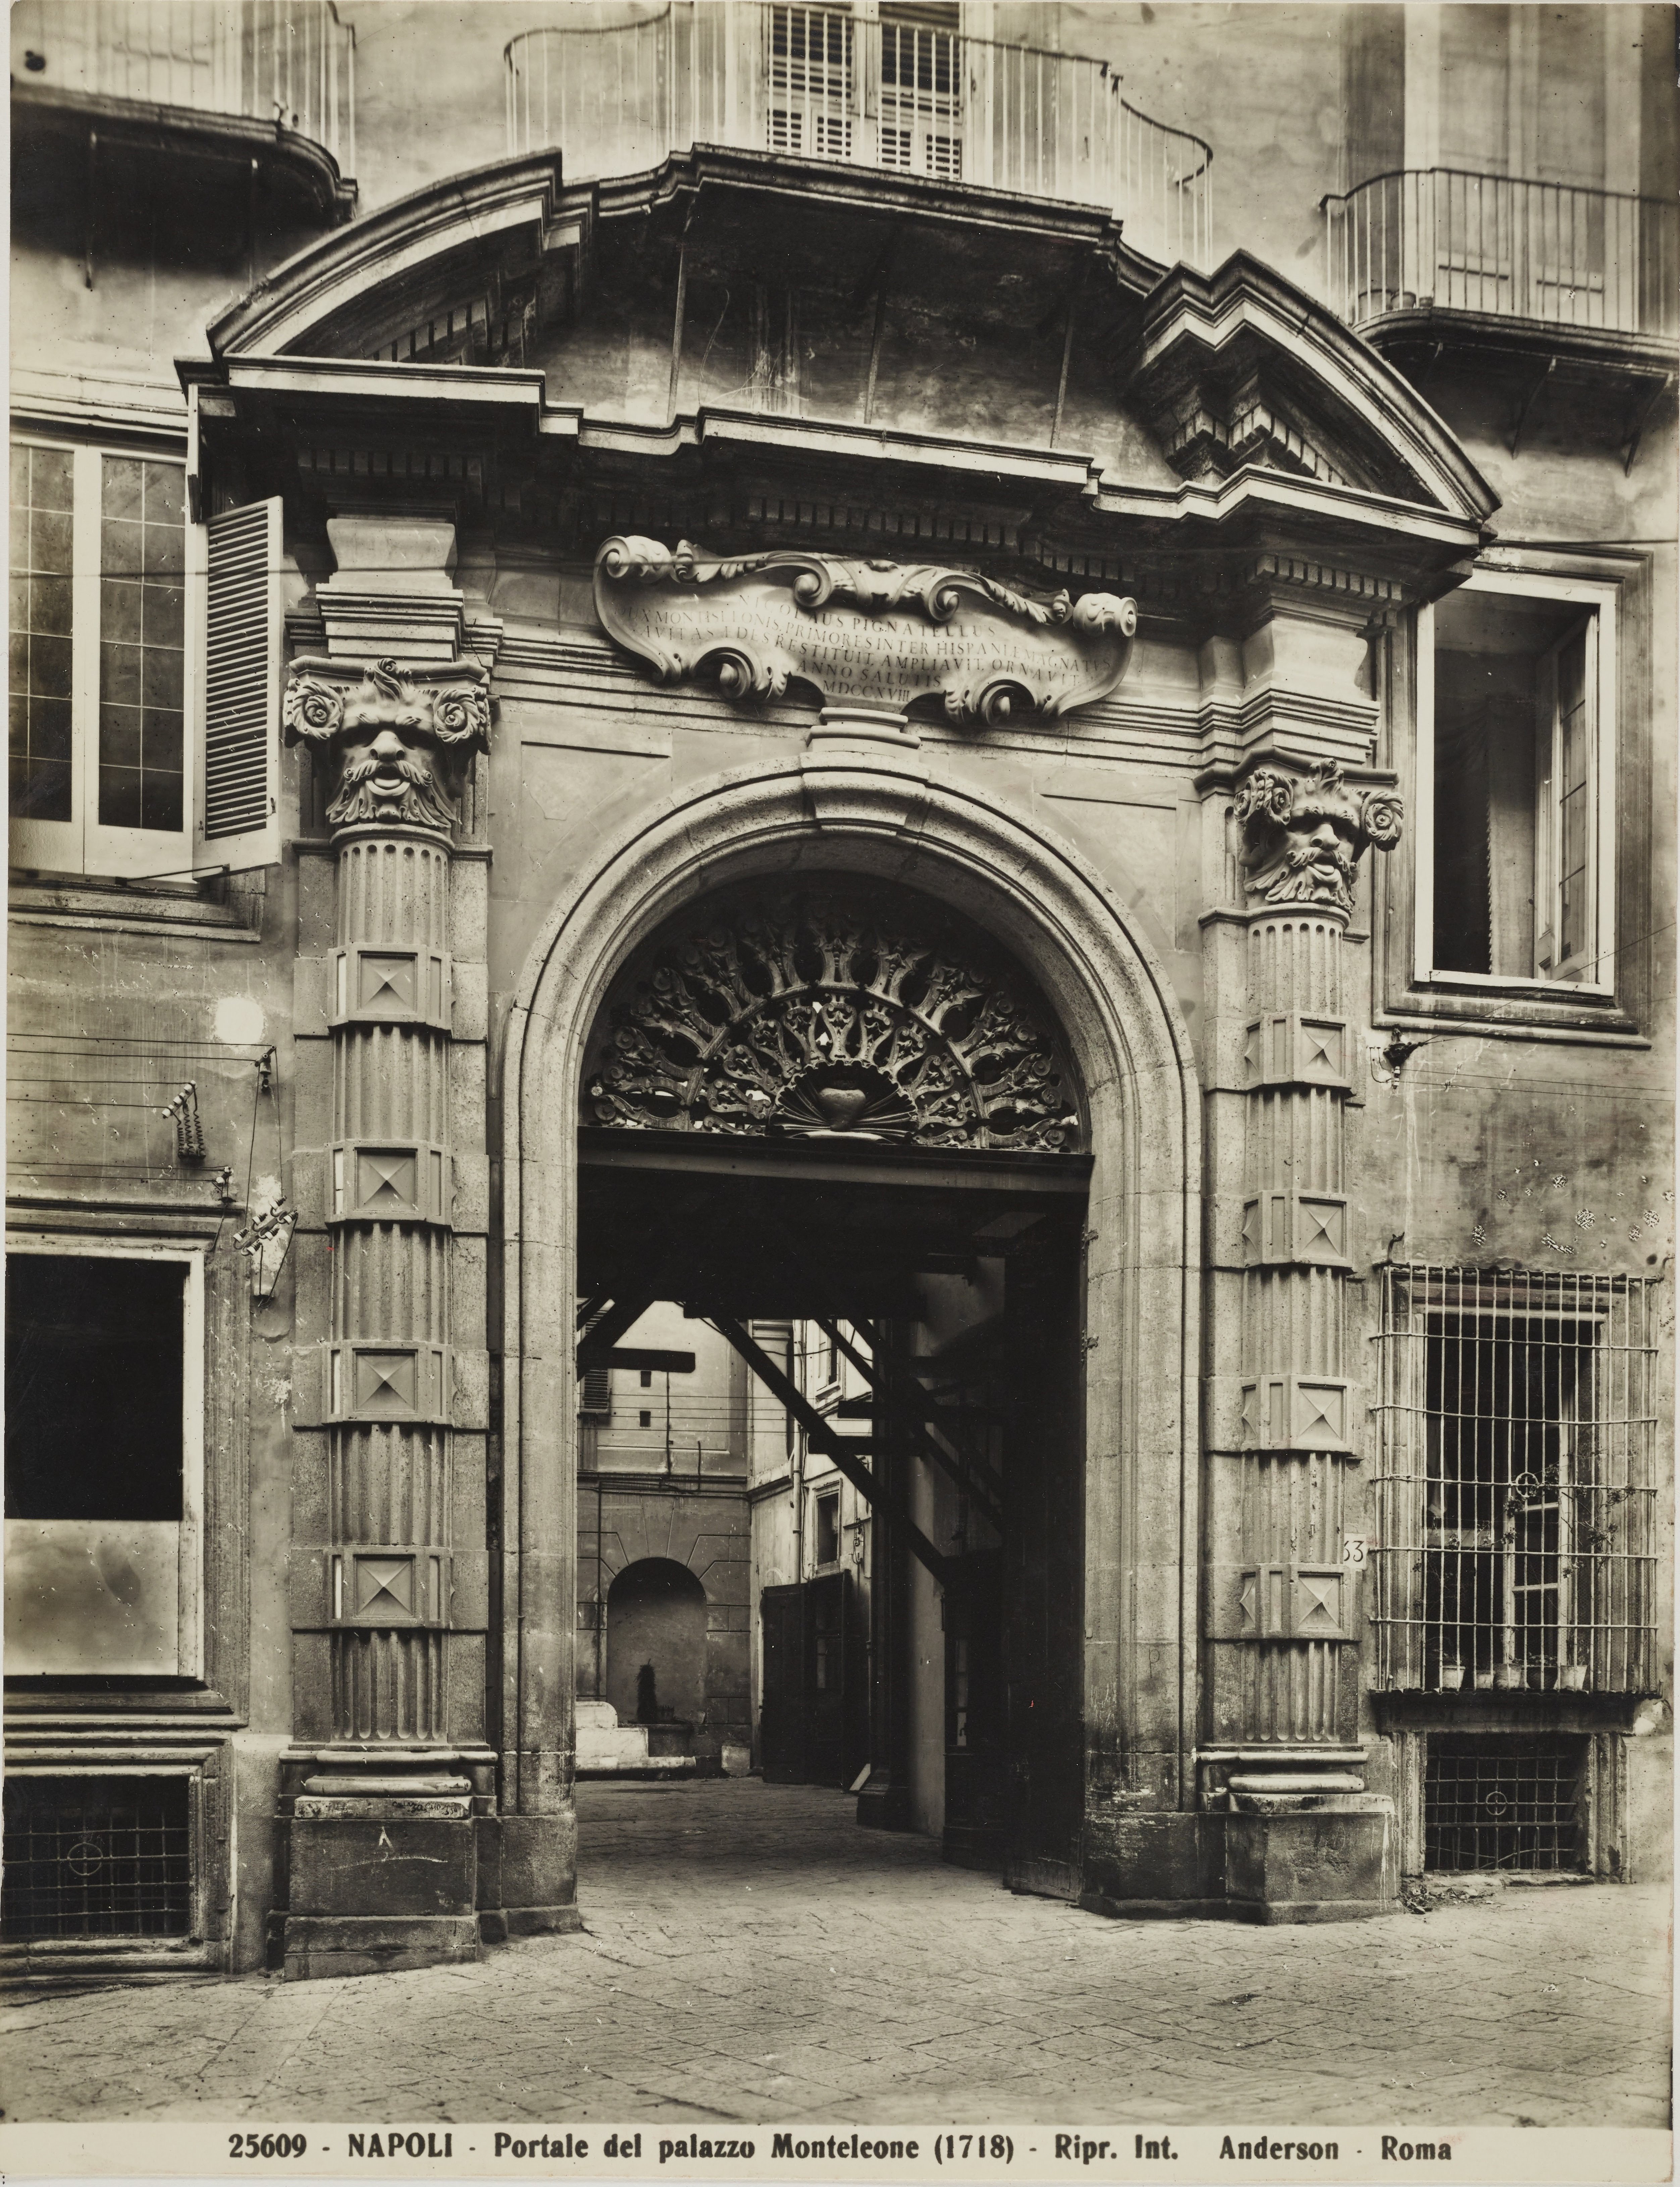 Anderson, Napoli - Palazzo Pignatelli di Monteleone, portale, 1941-1960, gelatina ai sali d'argento, MPI6071634